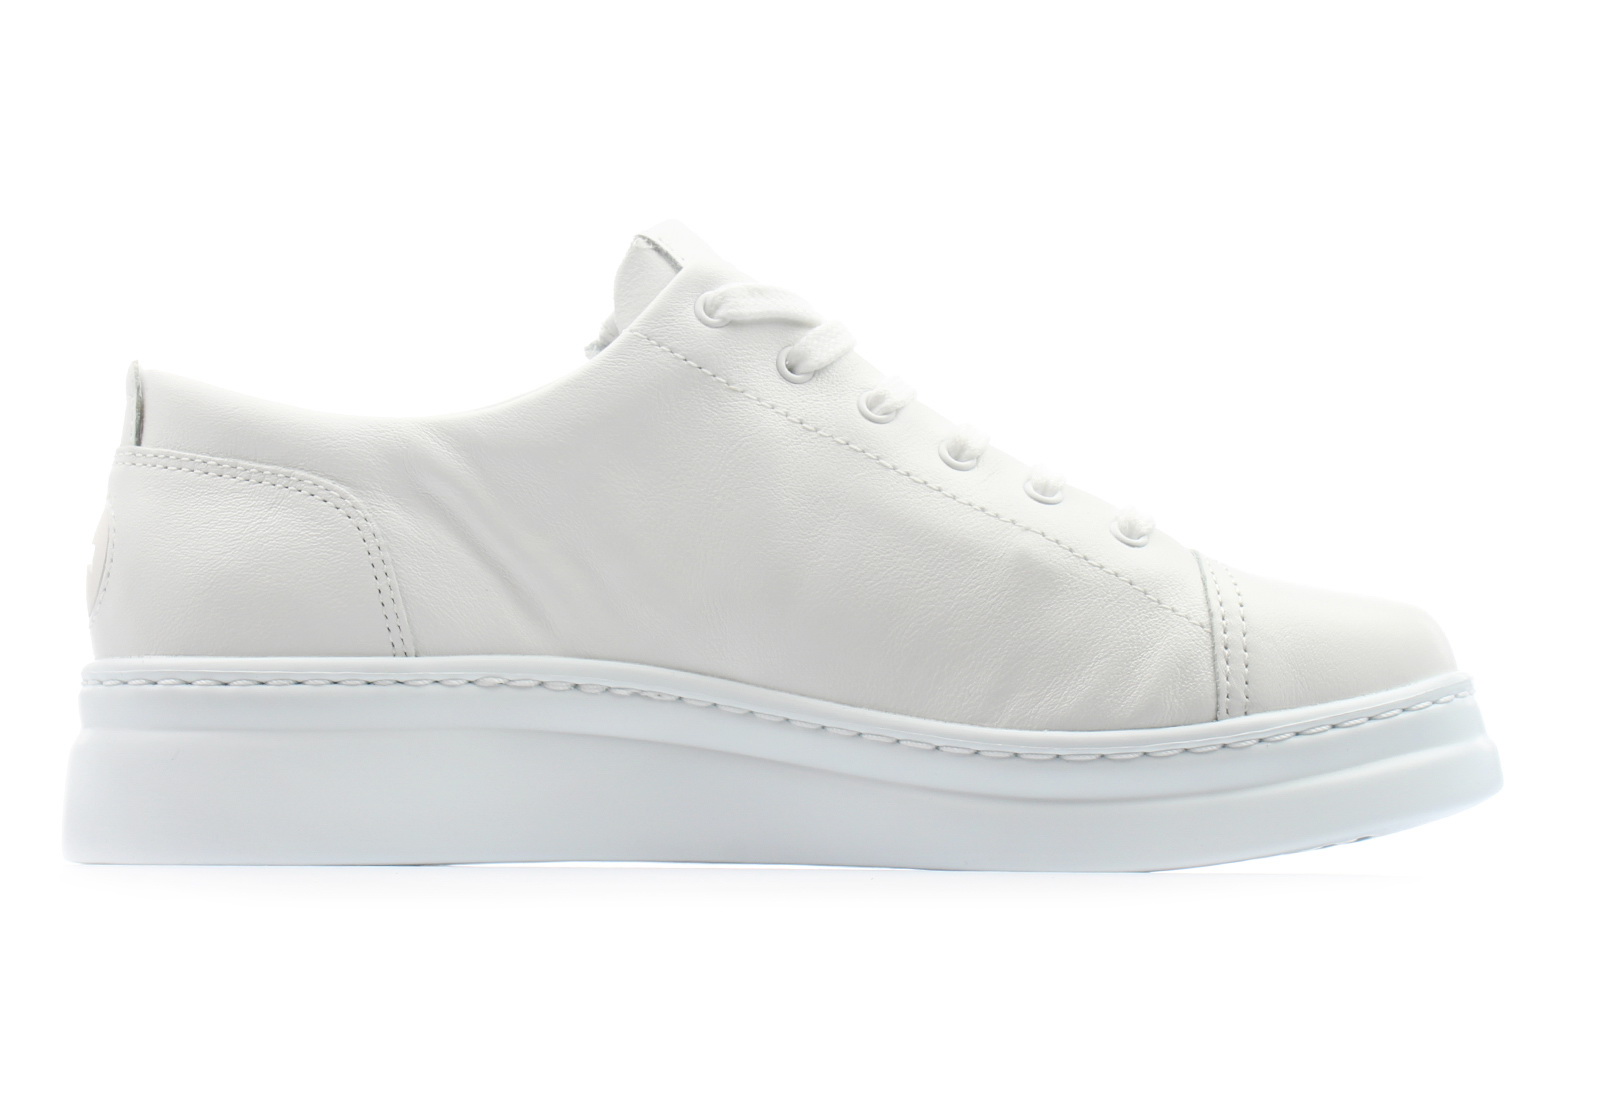 Camper Shoes - Runner Up - K200508-041 - Online shop for sneakers ...